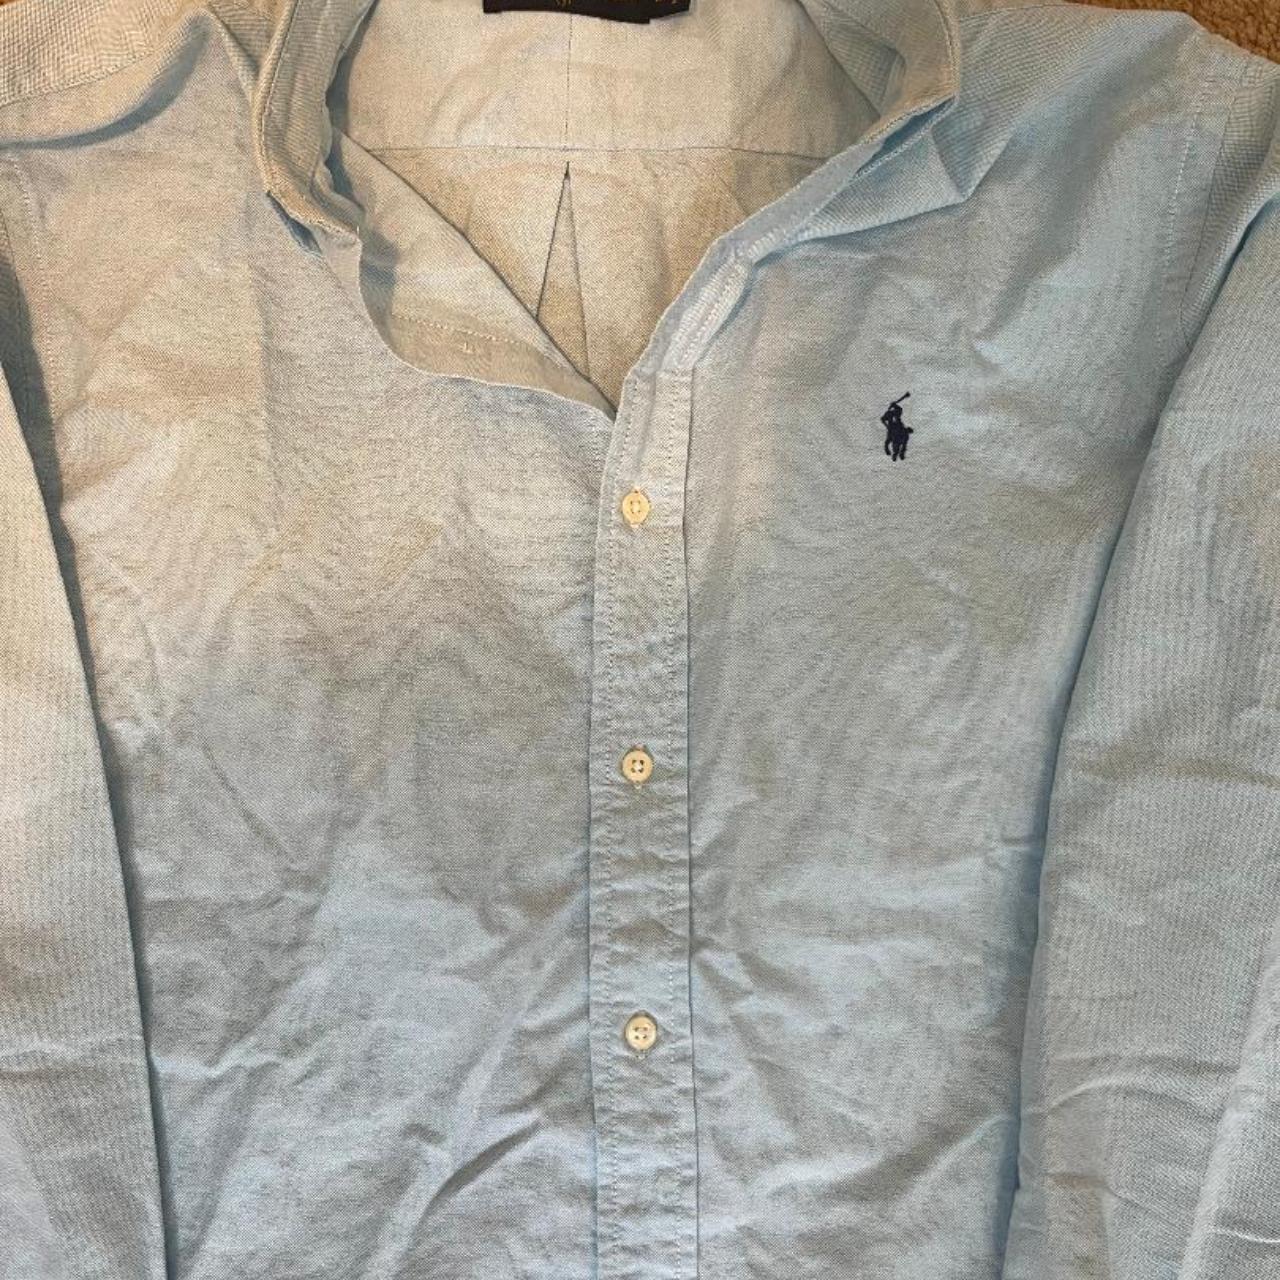 Ralph lauren light blue shirt Size M Never worn out. - Depop